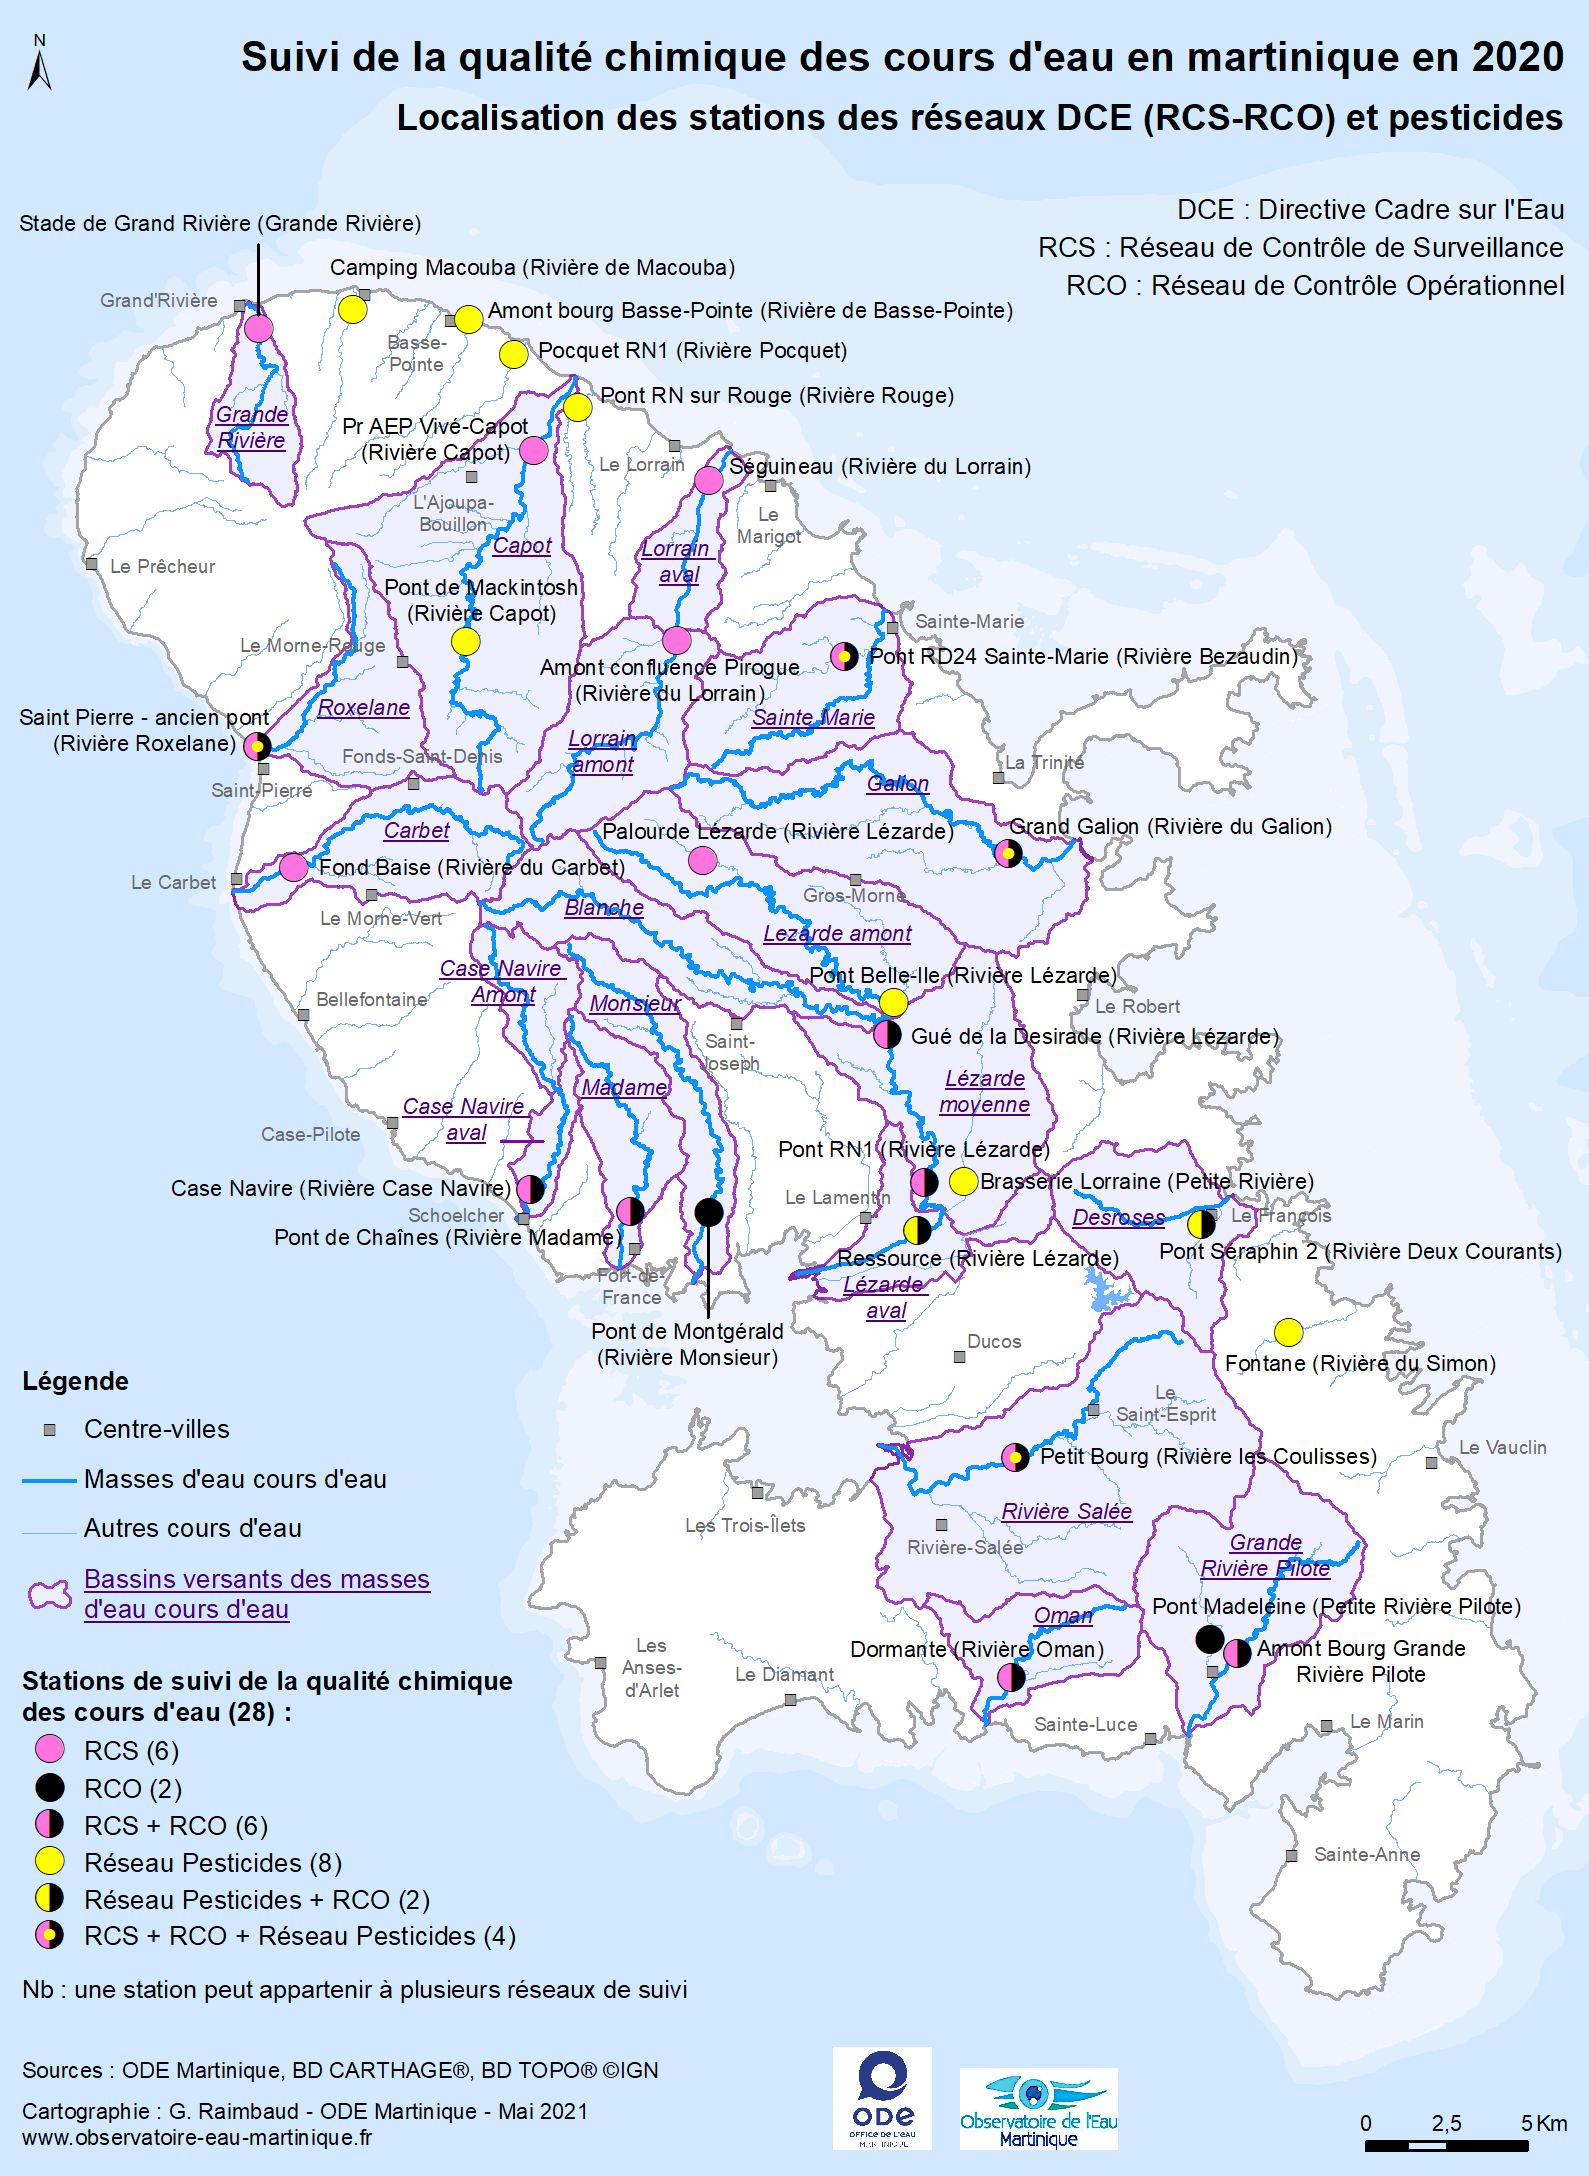 Suivi de la qualité chimique des cours d'eau en Martinique en 2020 - Localisation des stations